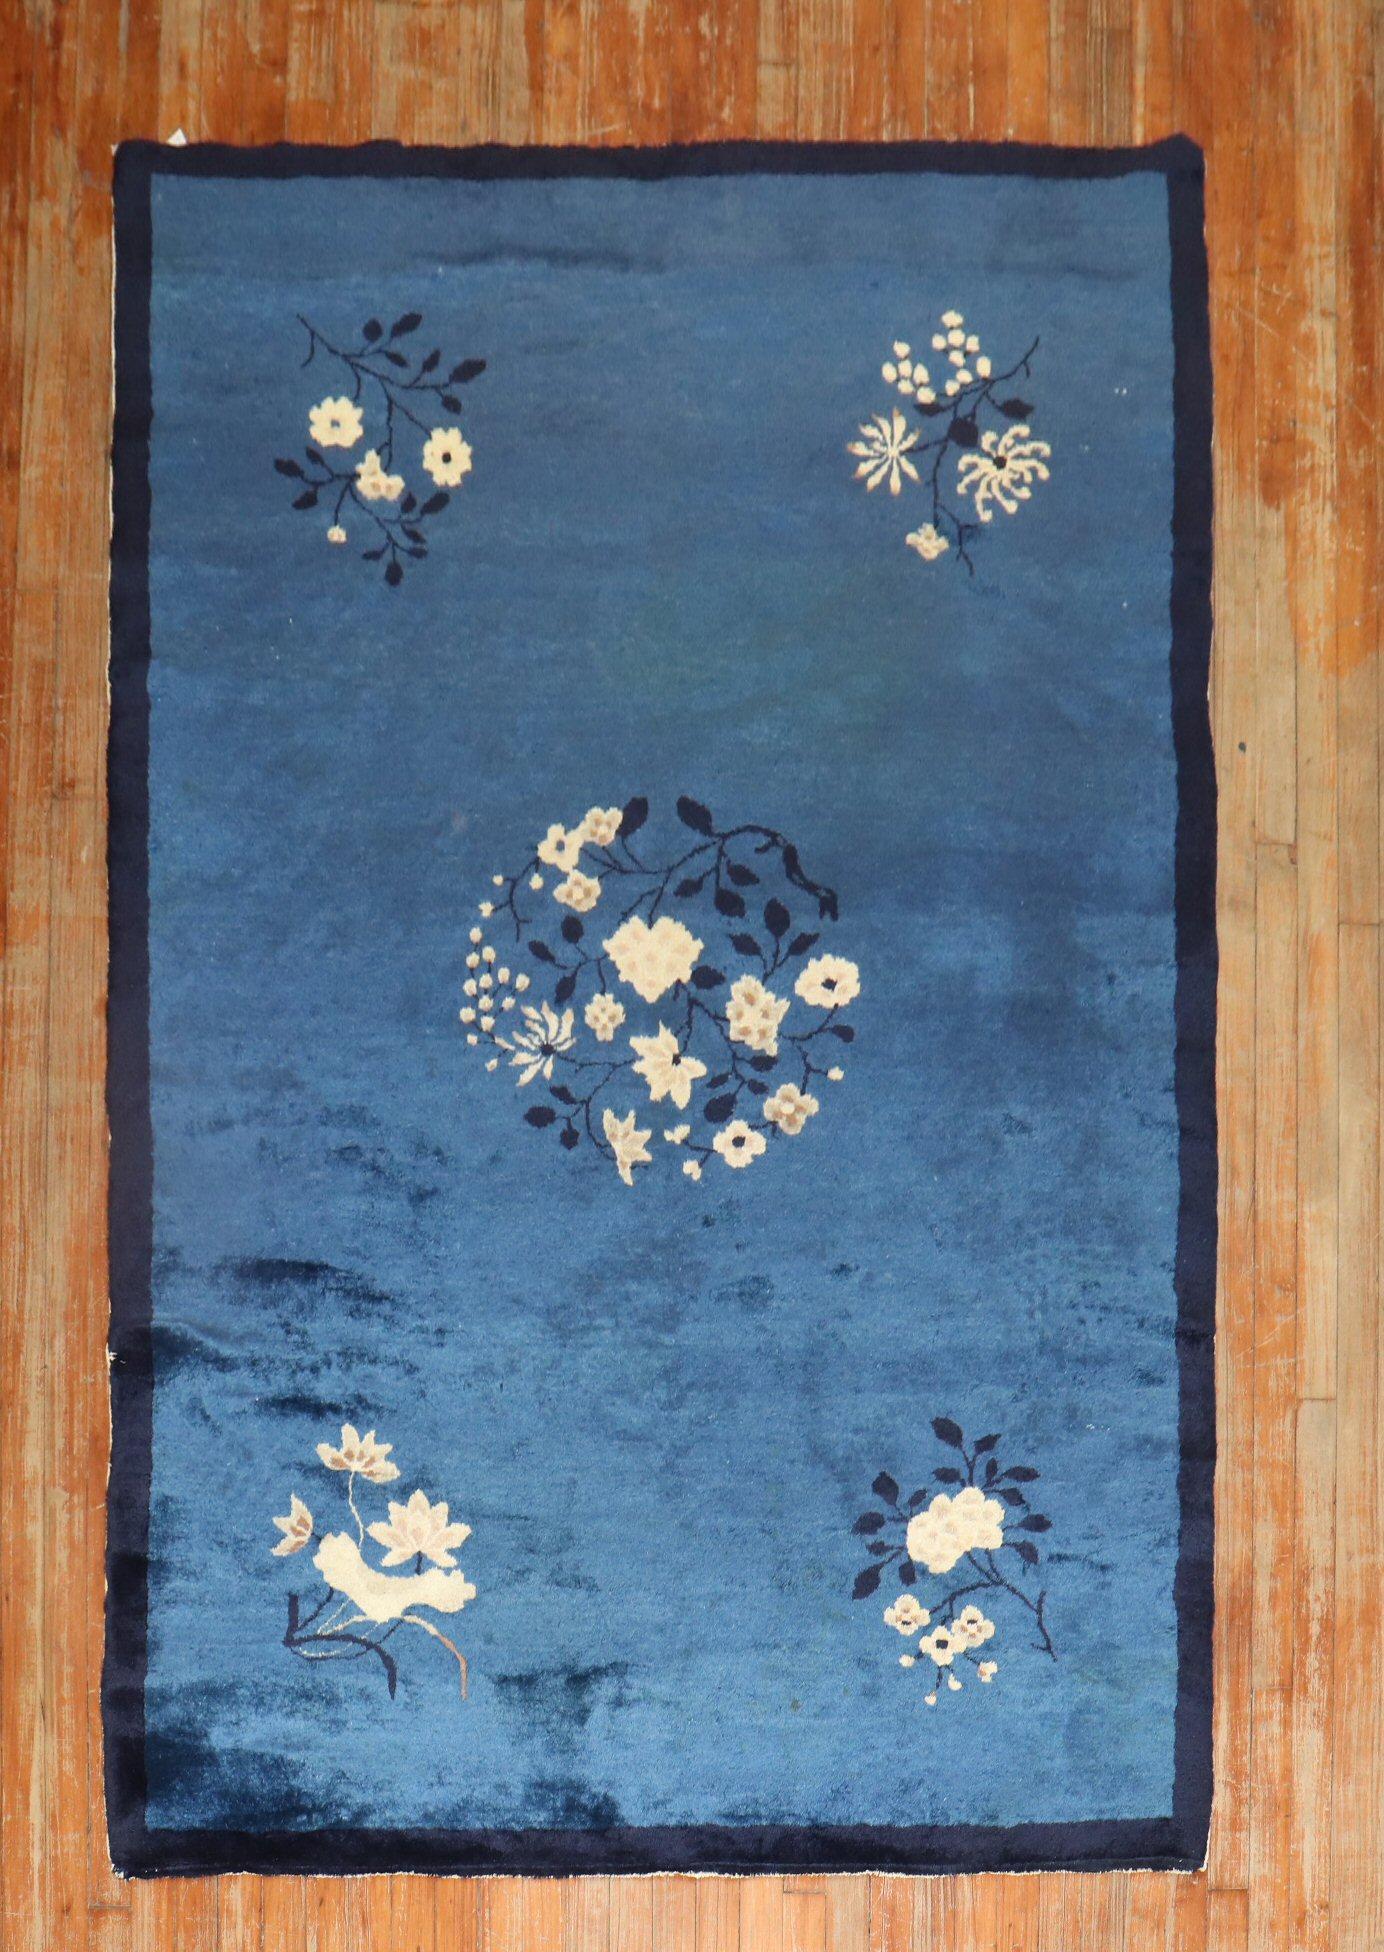 Chinesischer Teppich mit floralem Muster aus der Mitte des 20. Jahrhunderts, überwiegend marineblau

Maße: 4'10'' x 7'8''.